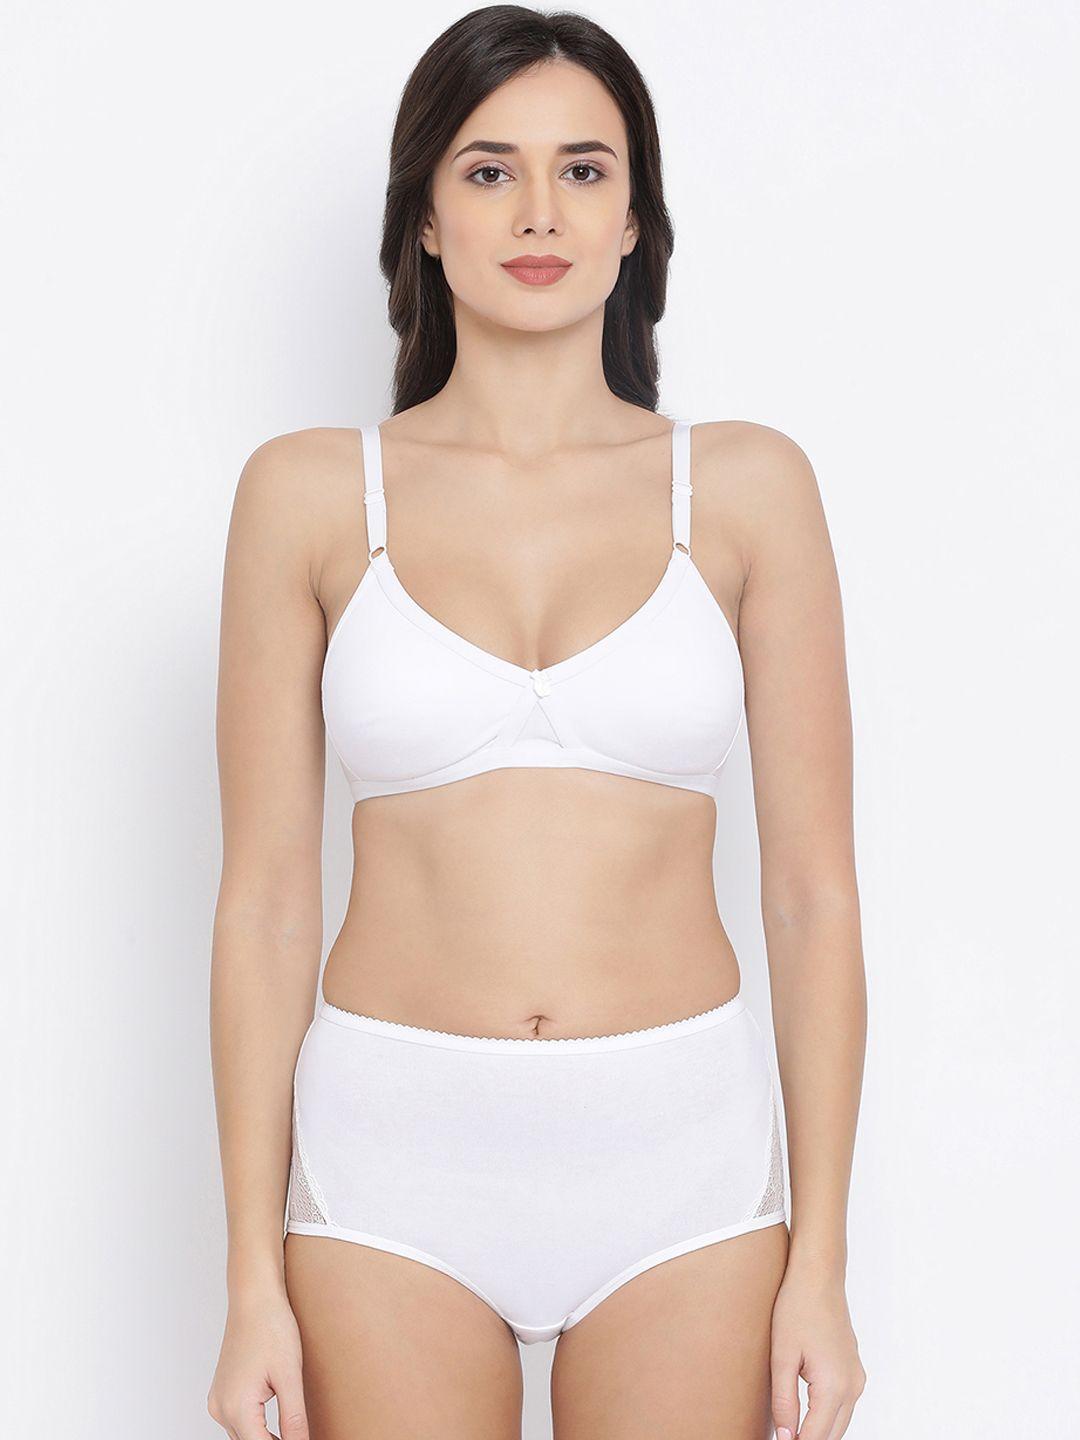 clovia women white solid lingerie set combbp37532b